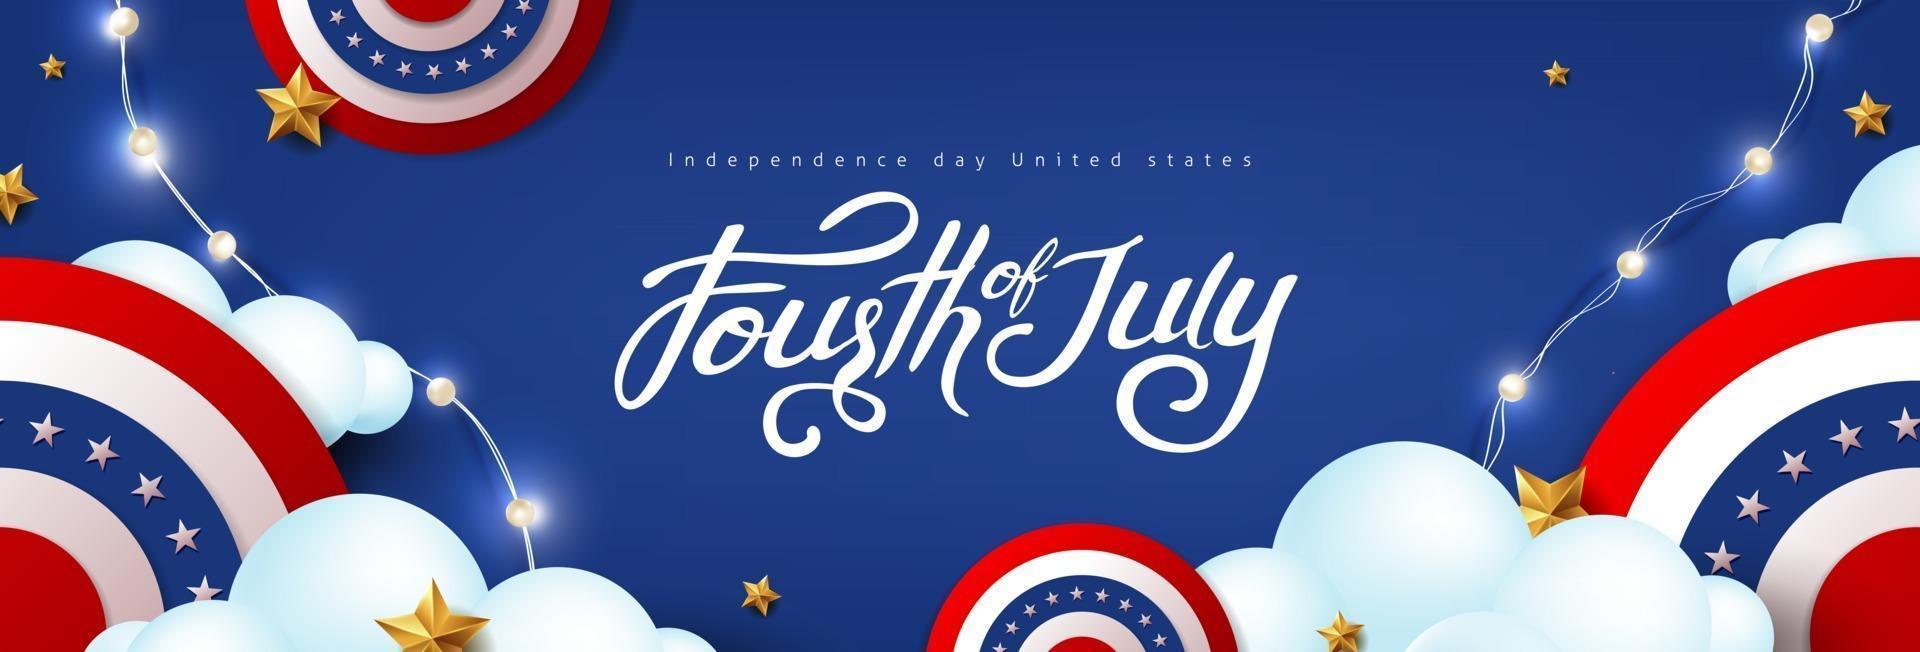 självständighetsdagen usa firande banner med festlig dekoration amerikansk på moln himmel. vektor